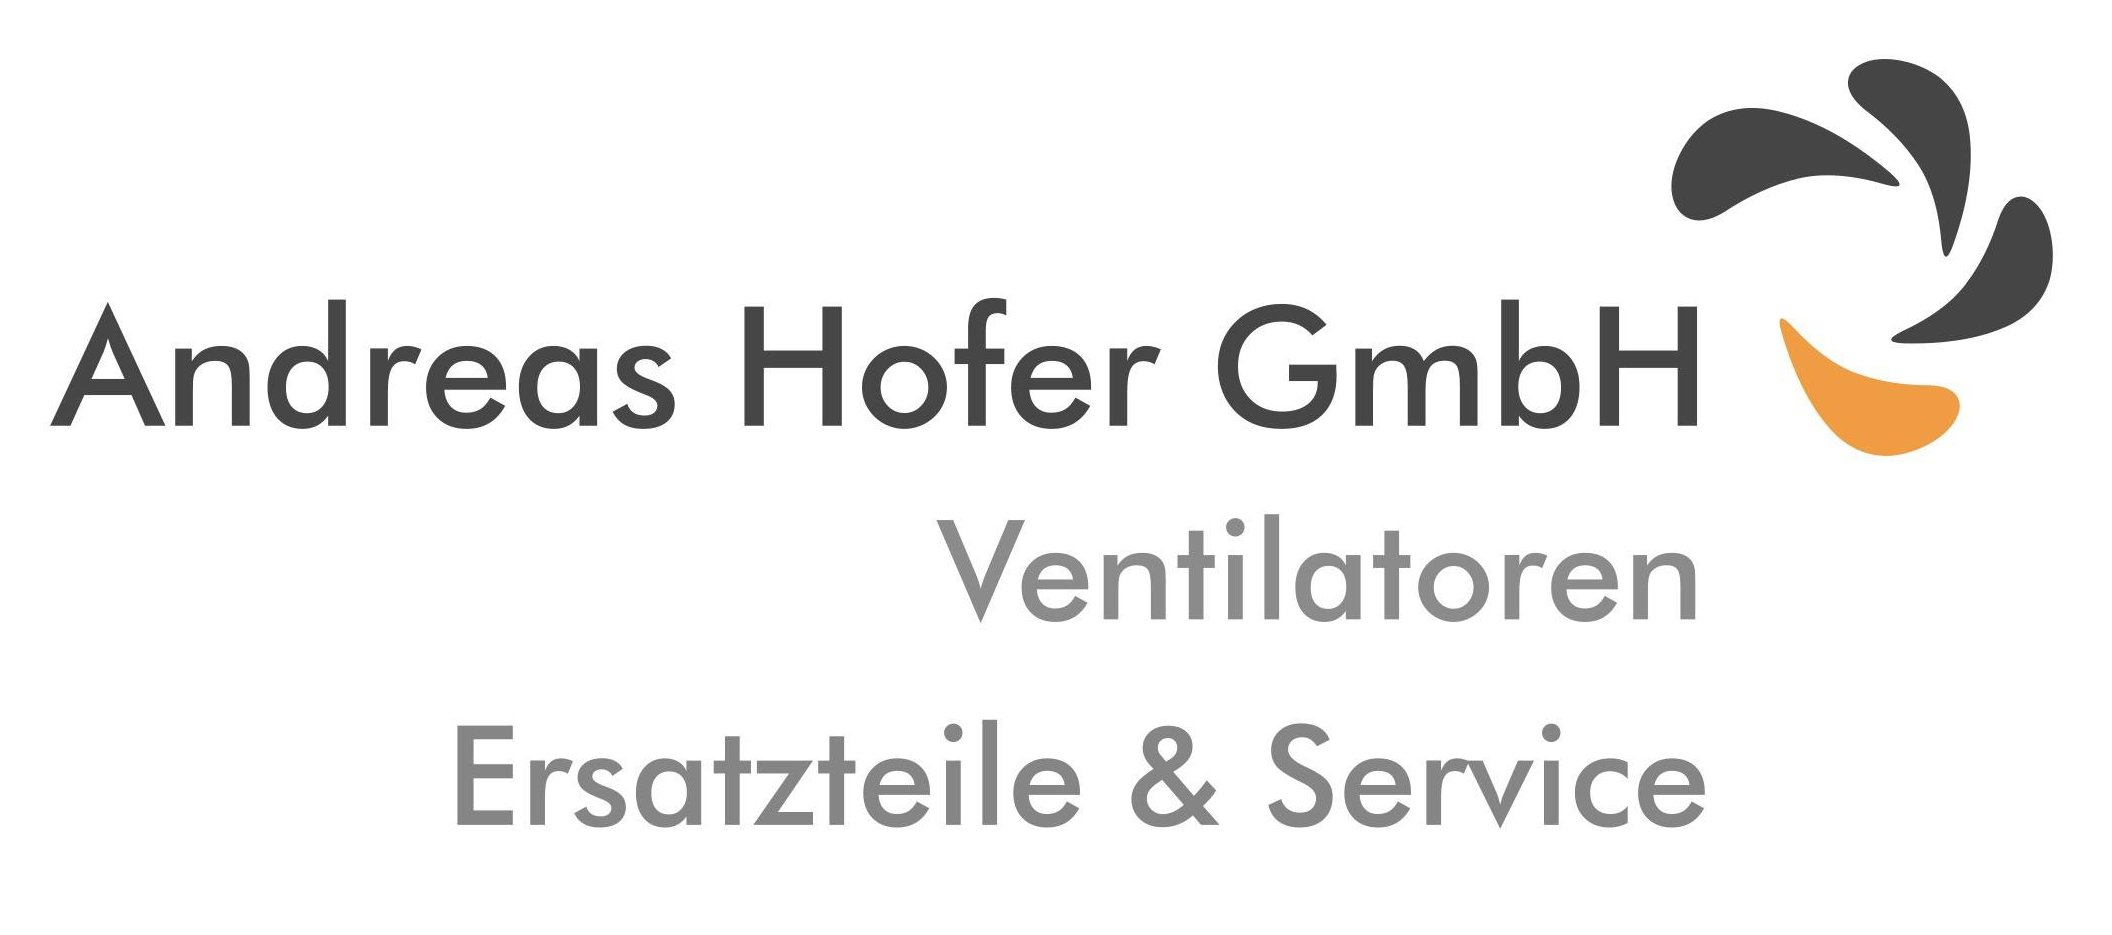 Andreas Hofer GmbH